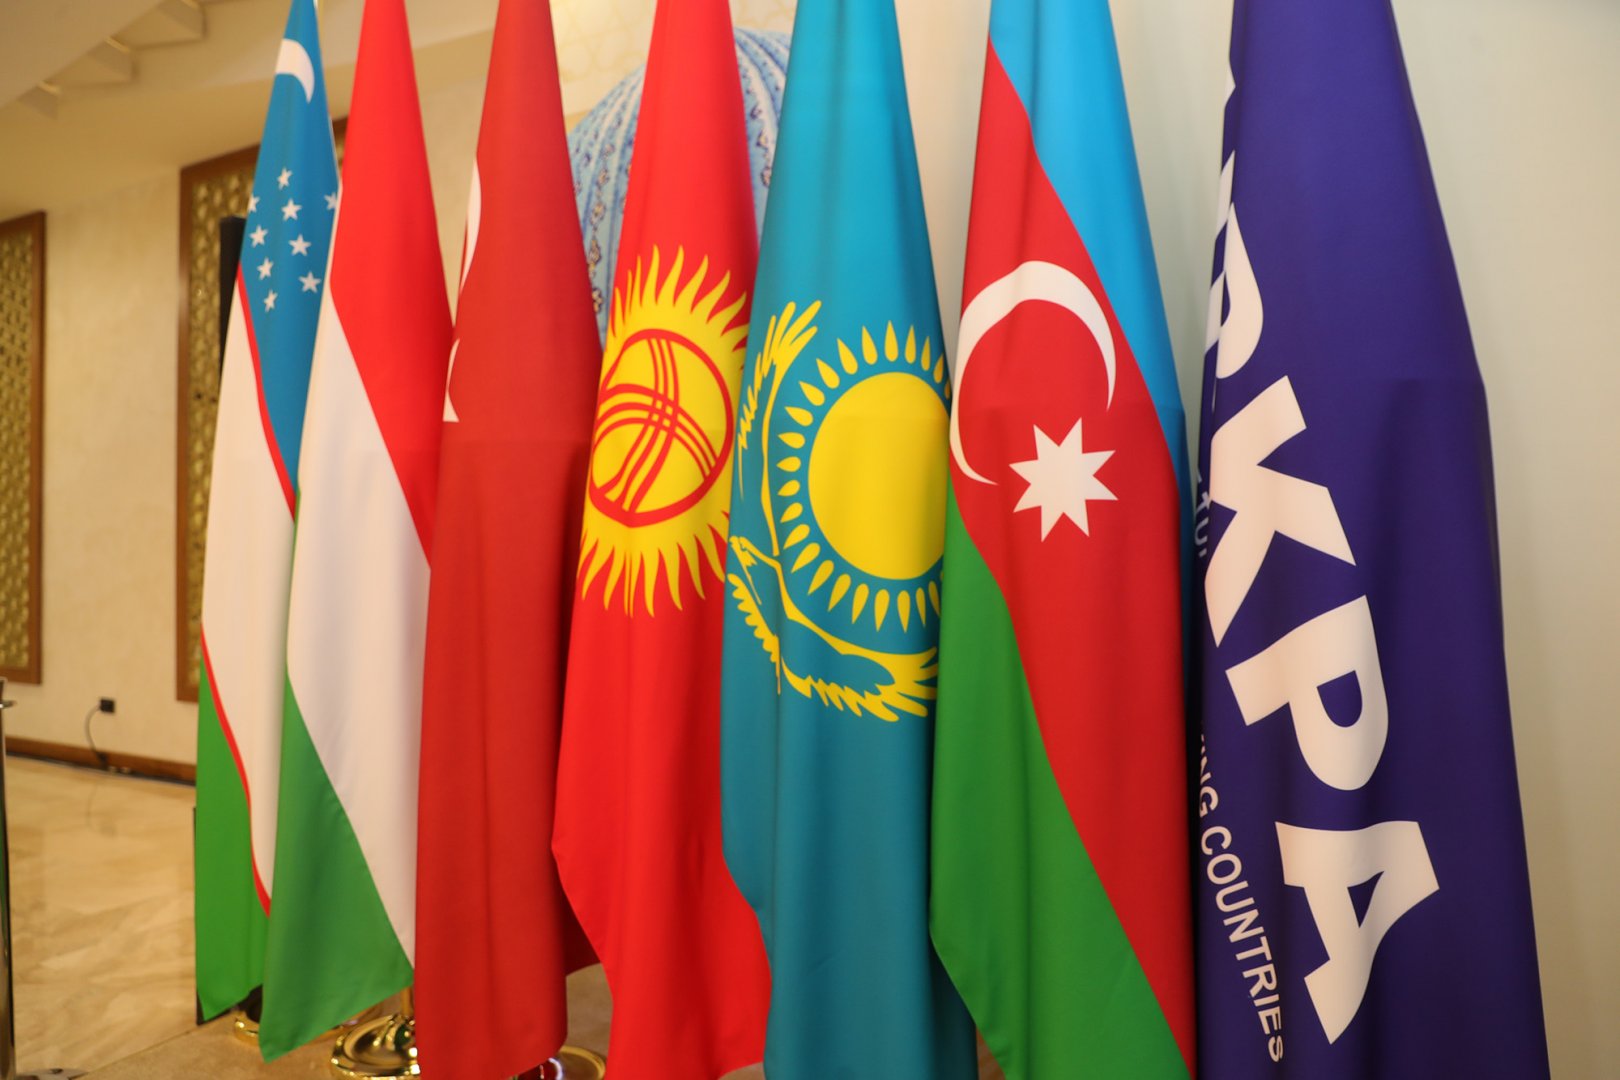 ТүркПАнын кезектеги 11-пленардык жыйыны 2022-жылы Кыргызстанда өтөт